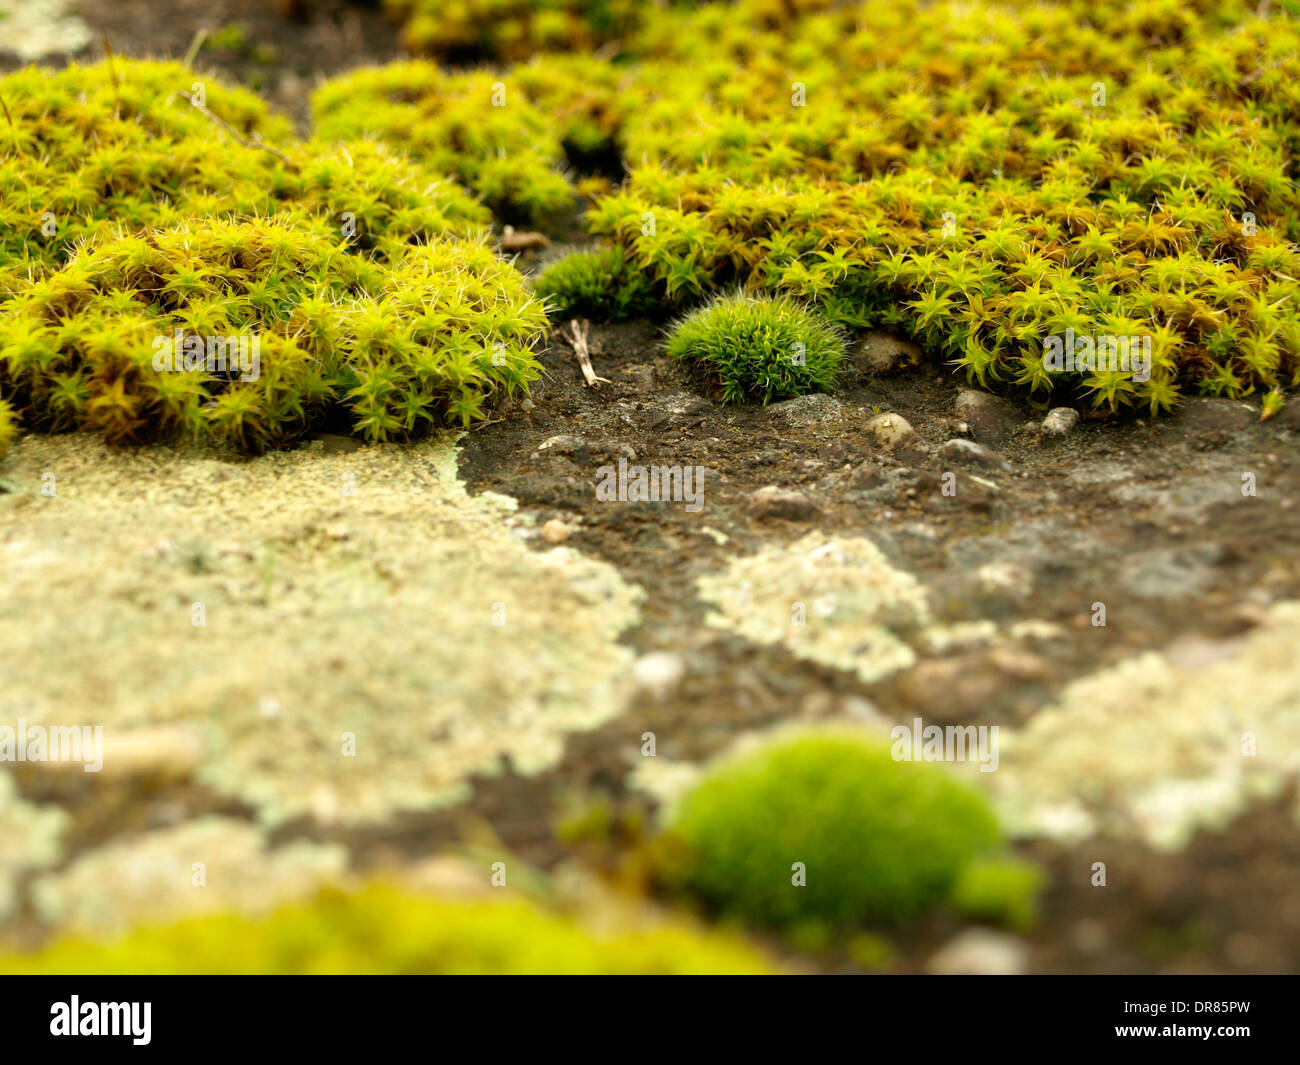 moss landcape, microcosmos, moss garden Stock Photo